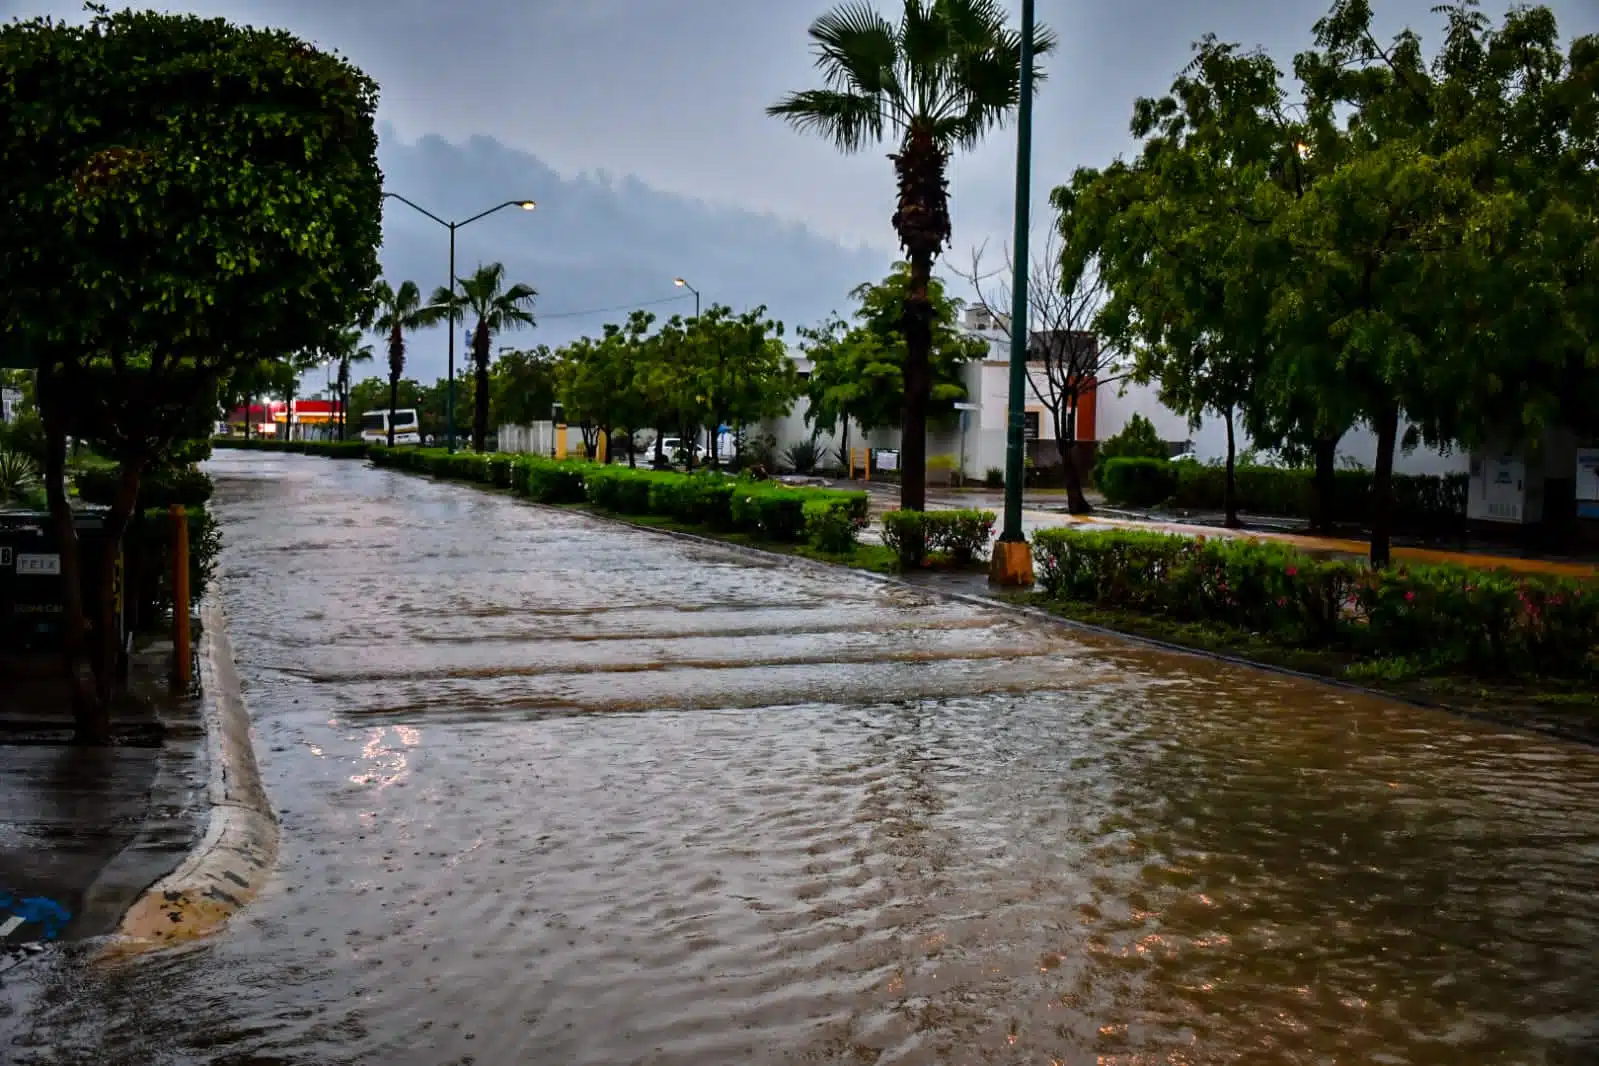 Avenida inundada, camellón central, árboles y palmeras